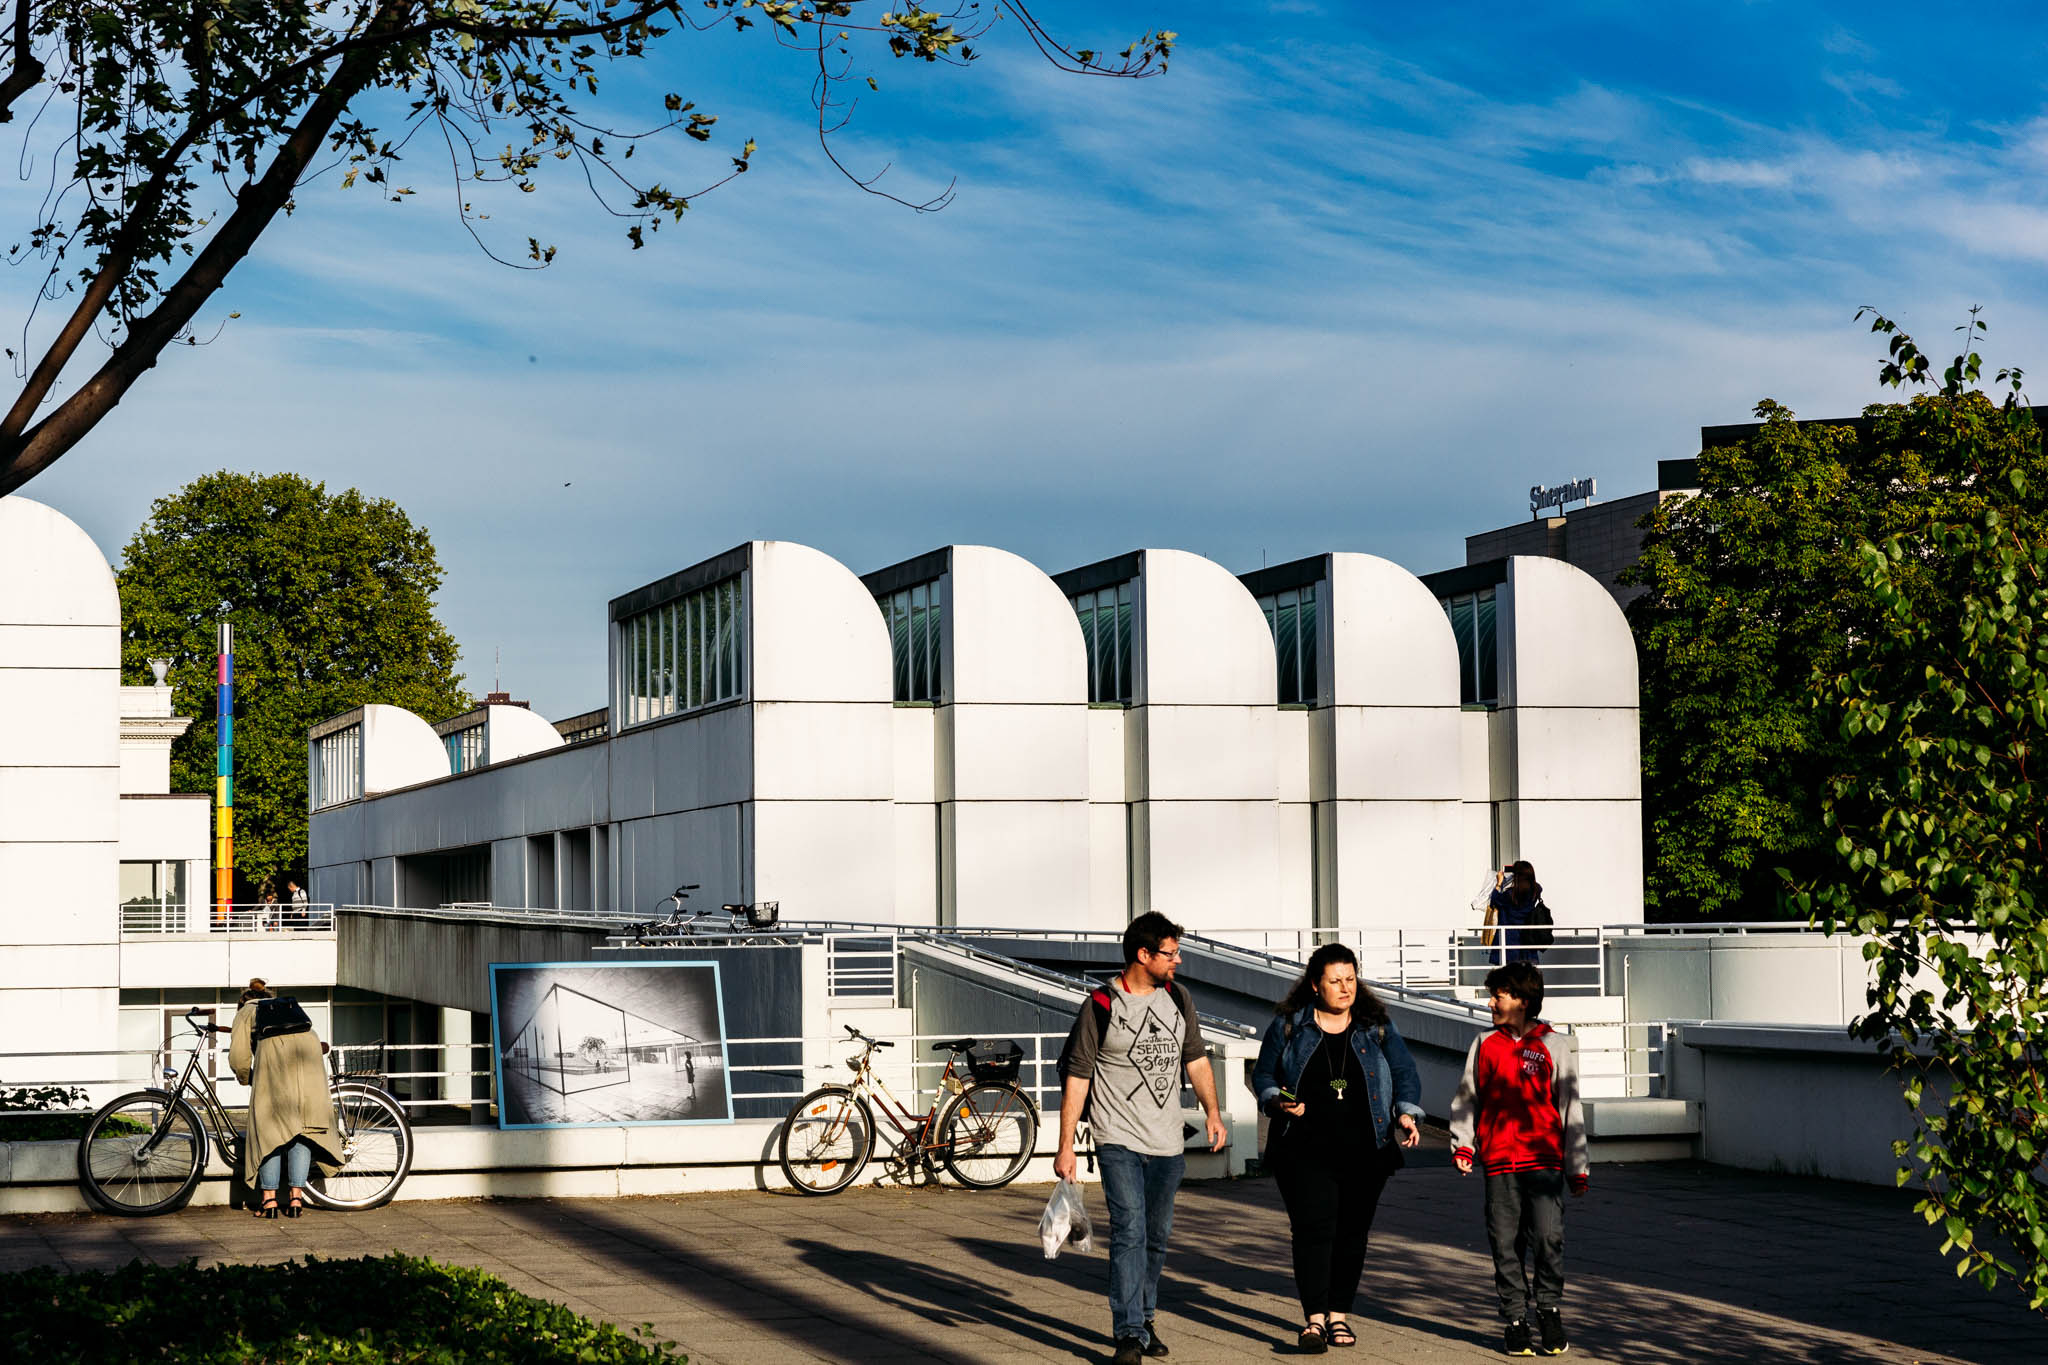 Bauhaus Archive – Museum of Design